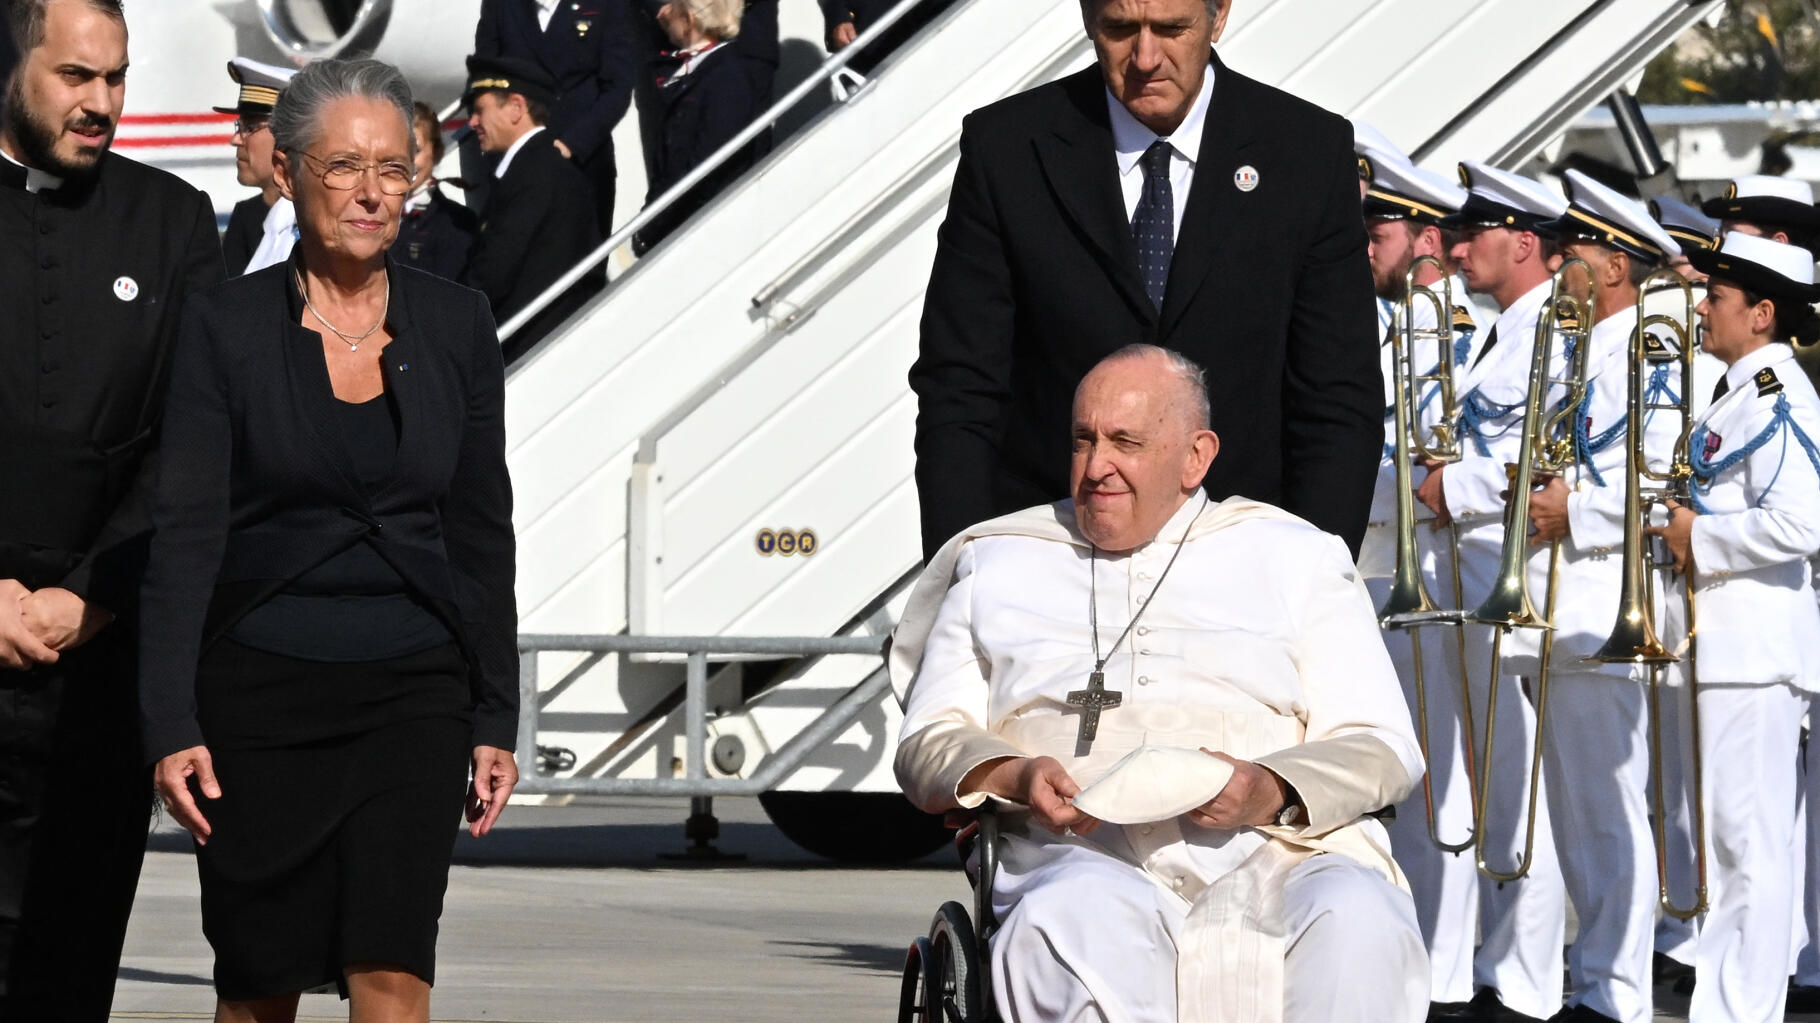 Le cadeau surprenant (et très politique) offert par Borne au pape François